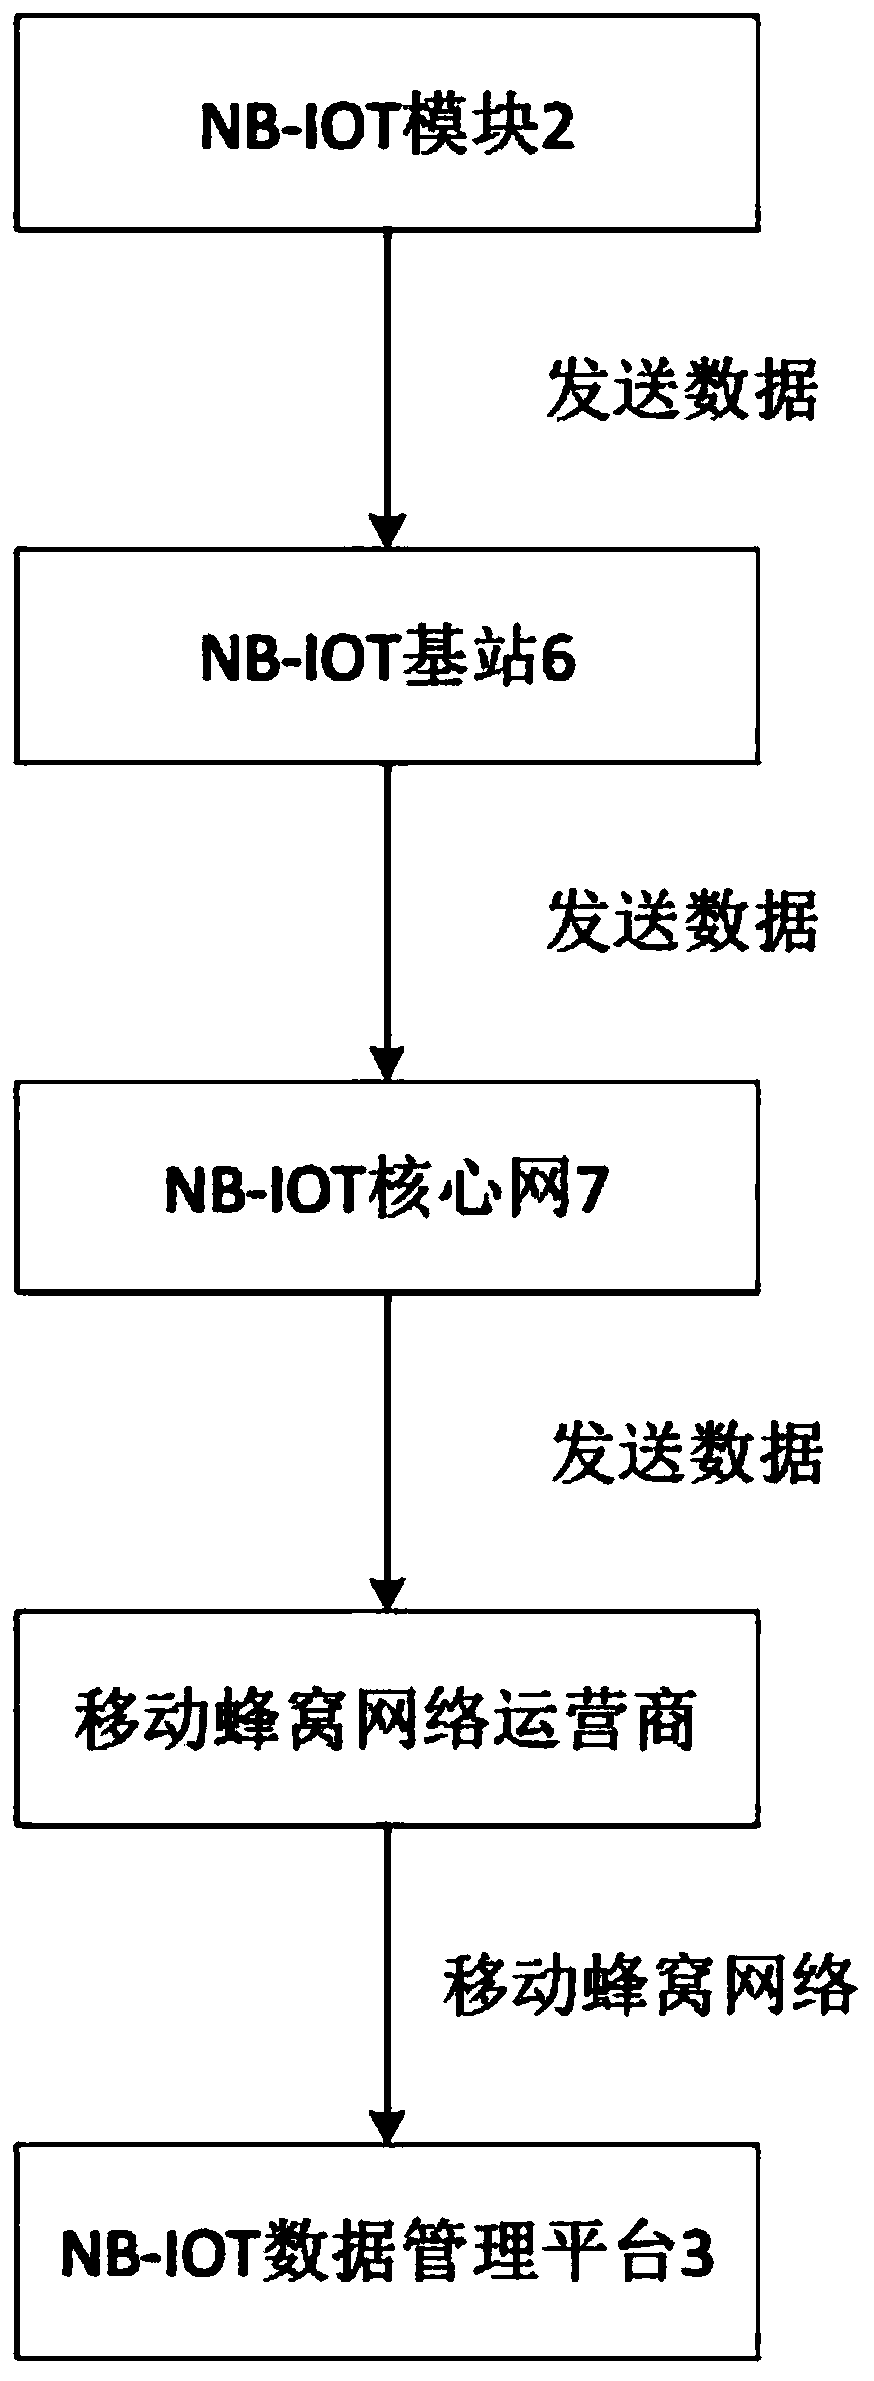 Application of NB-IOT door lock in underground storage room